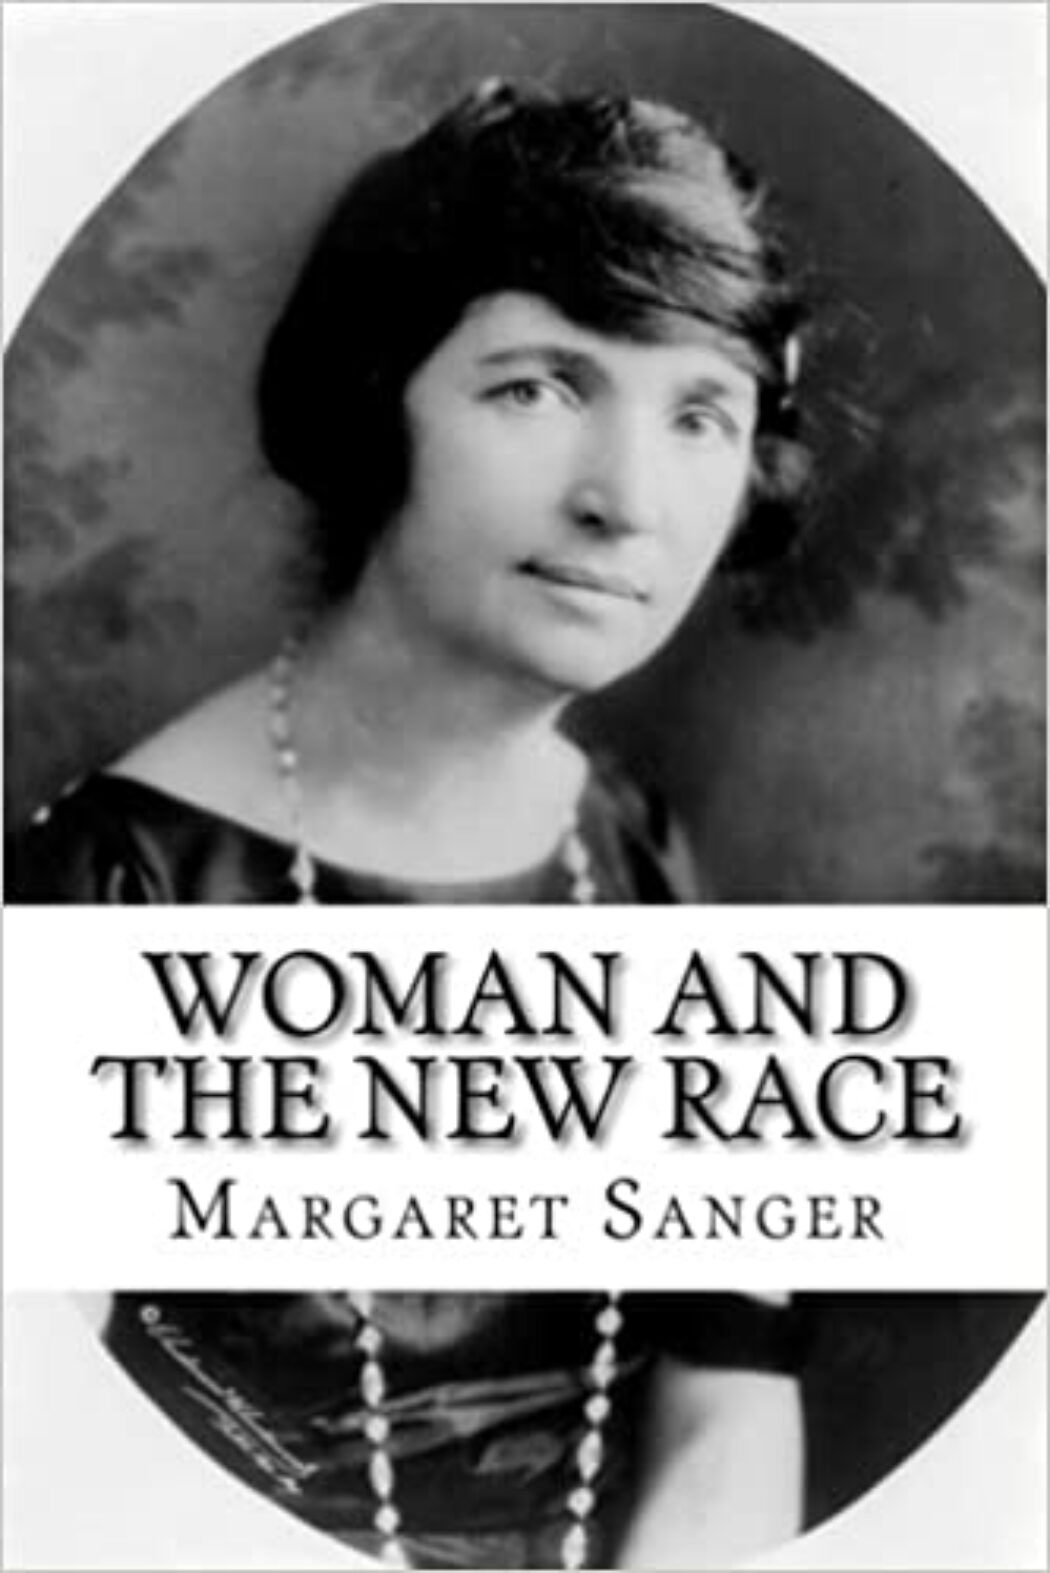 Le Planning familial renie sa fondatrice, Margaret Sanger - Le Salon Beige